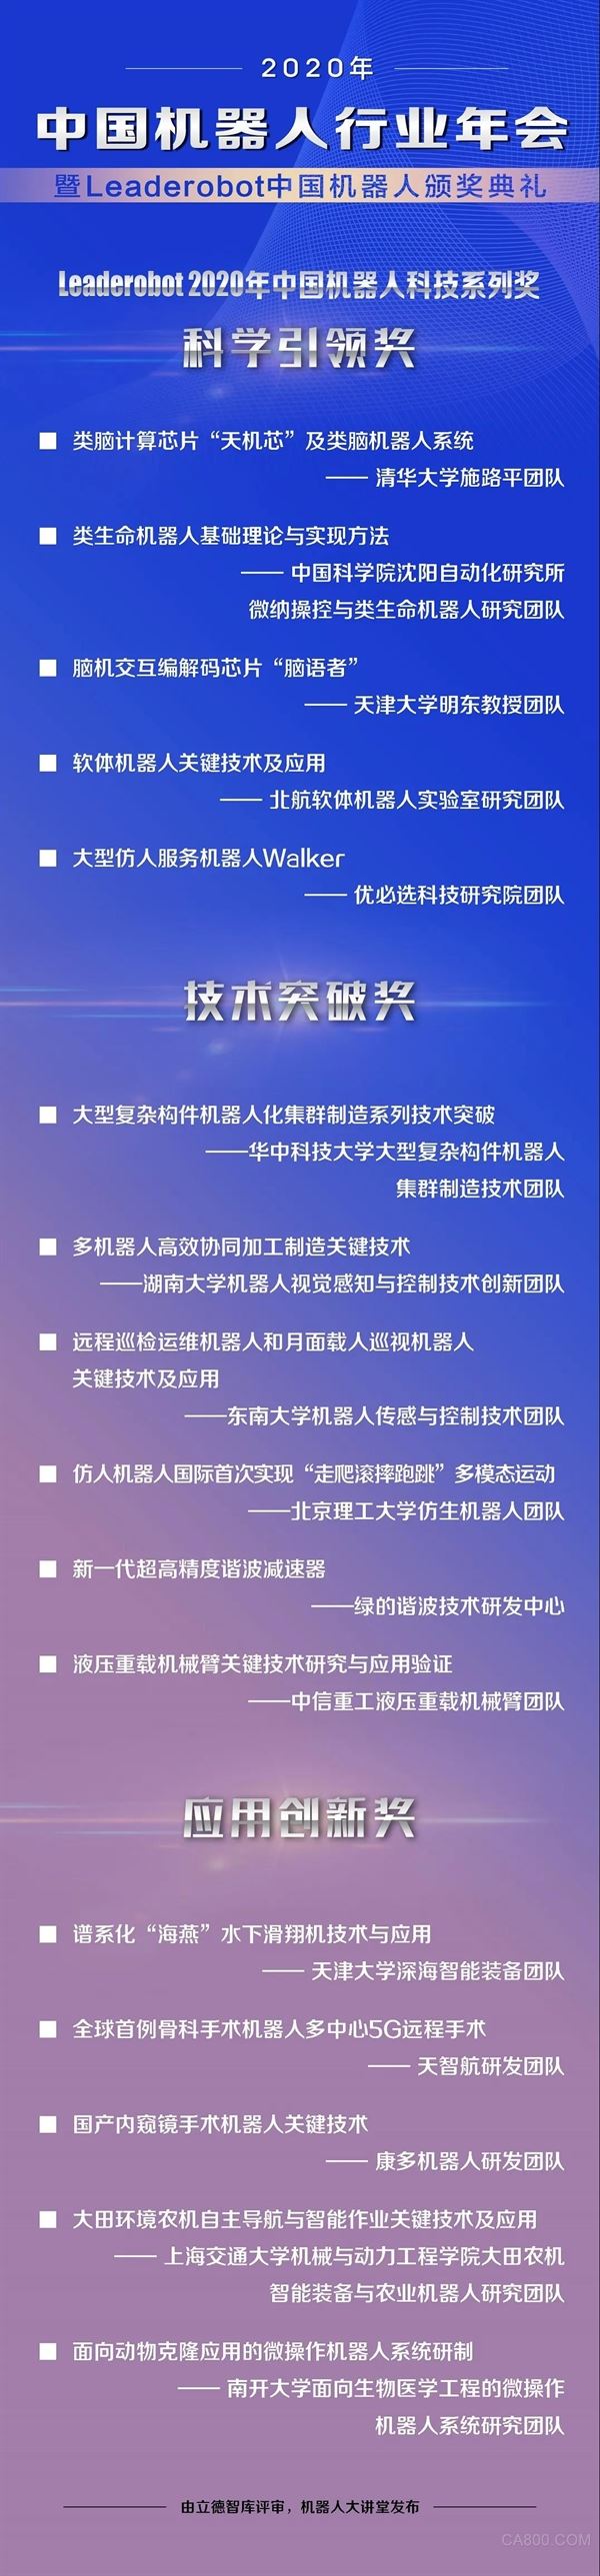 中国机器人行业年会,Leaderobot